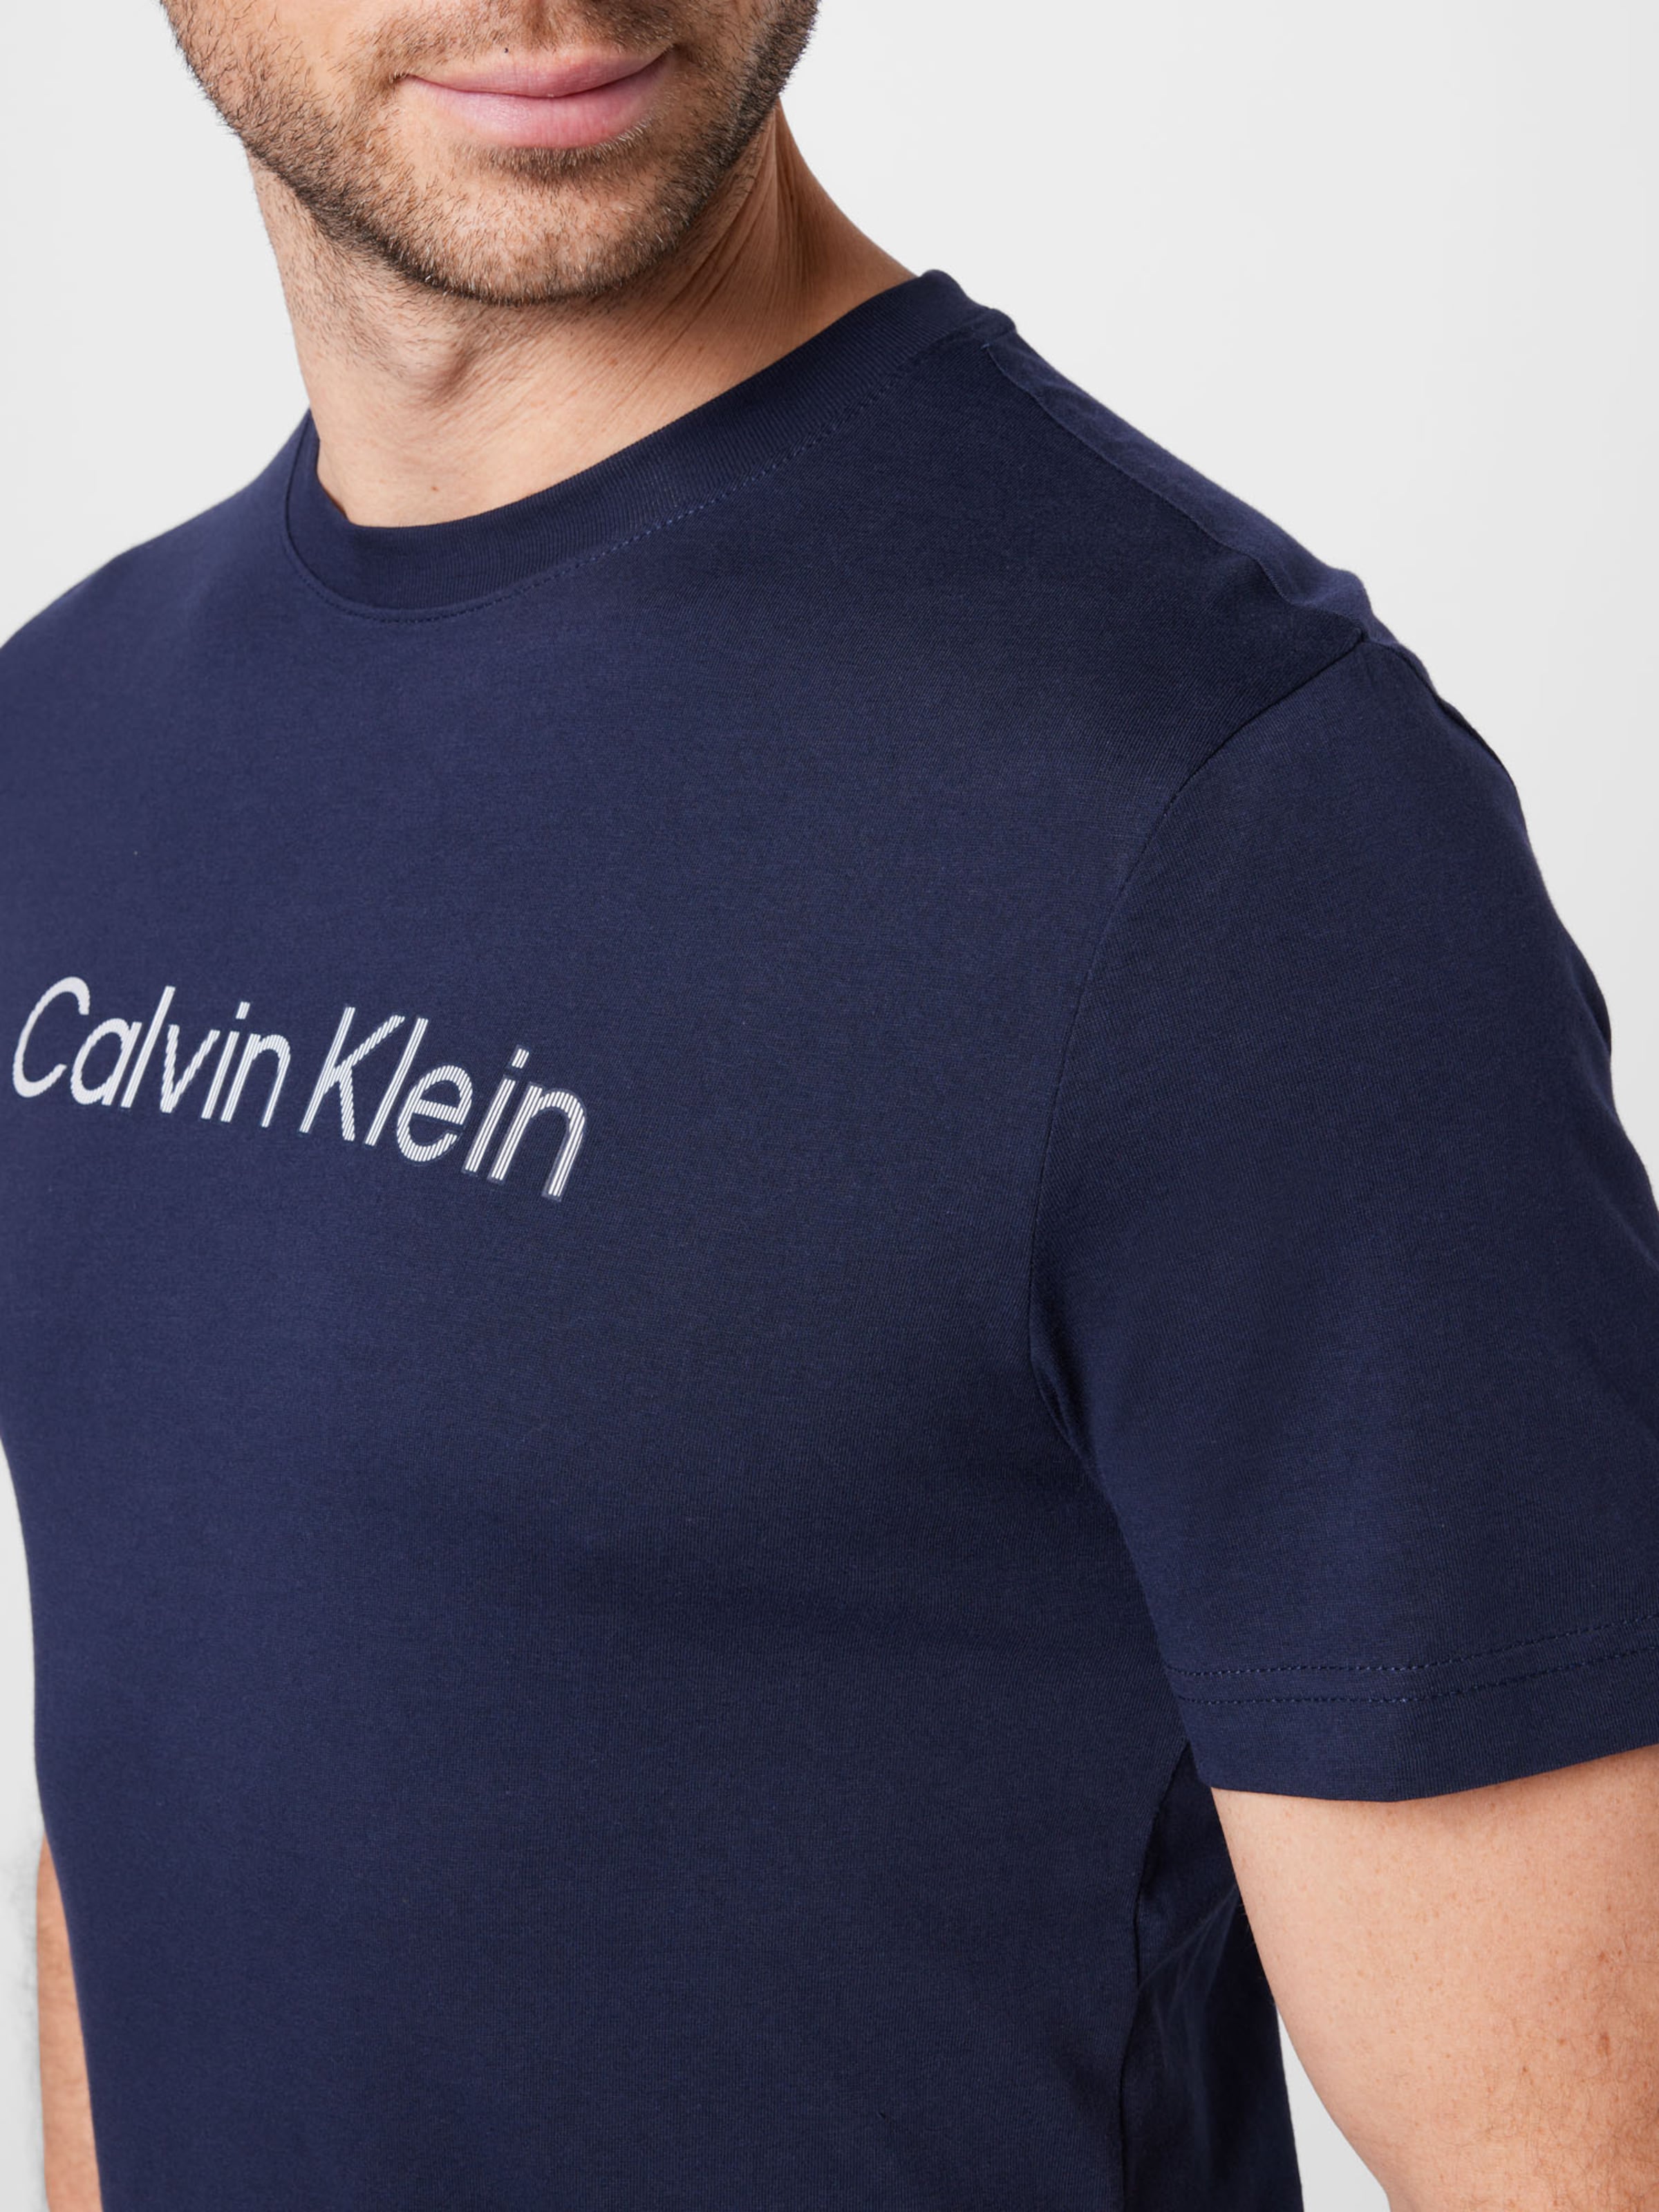 Calvin Klein T-Shirt in Navy 